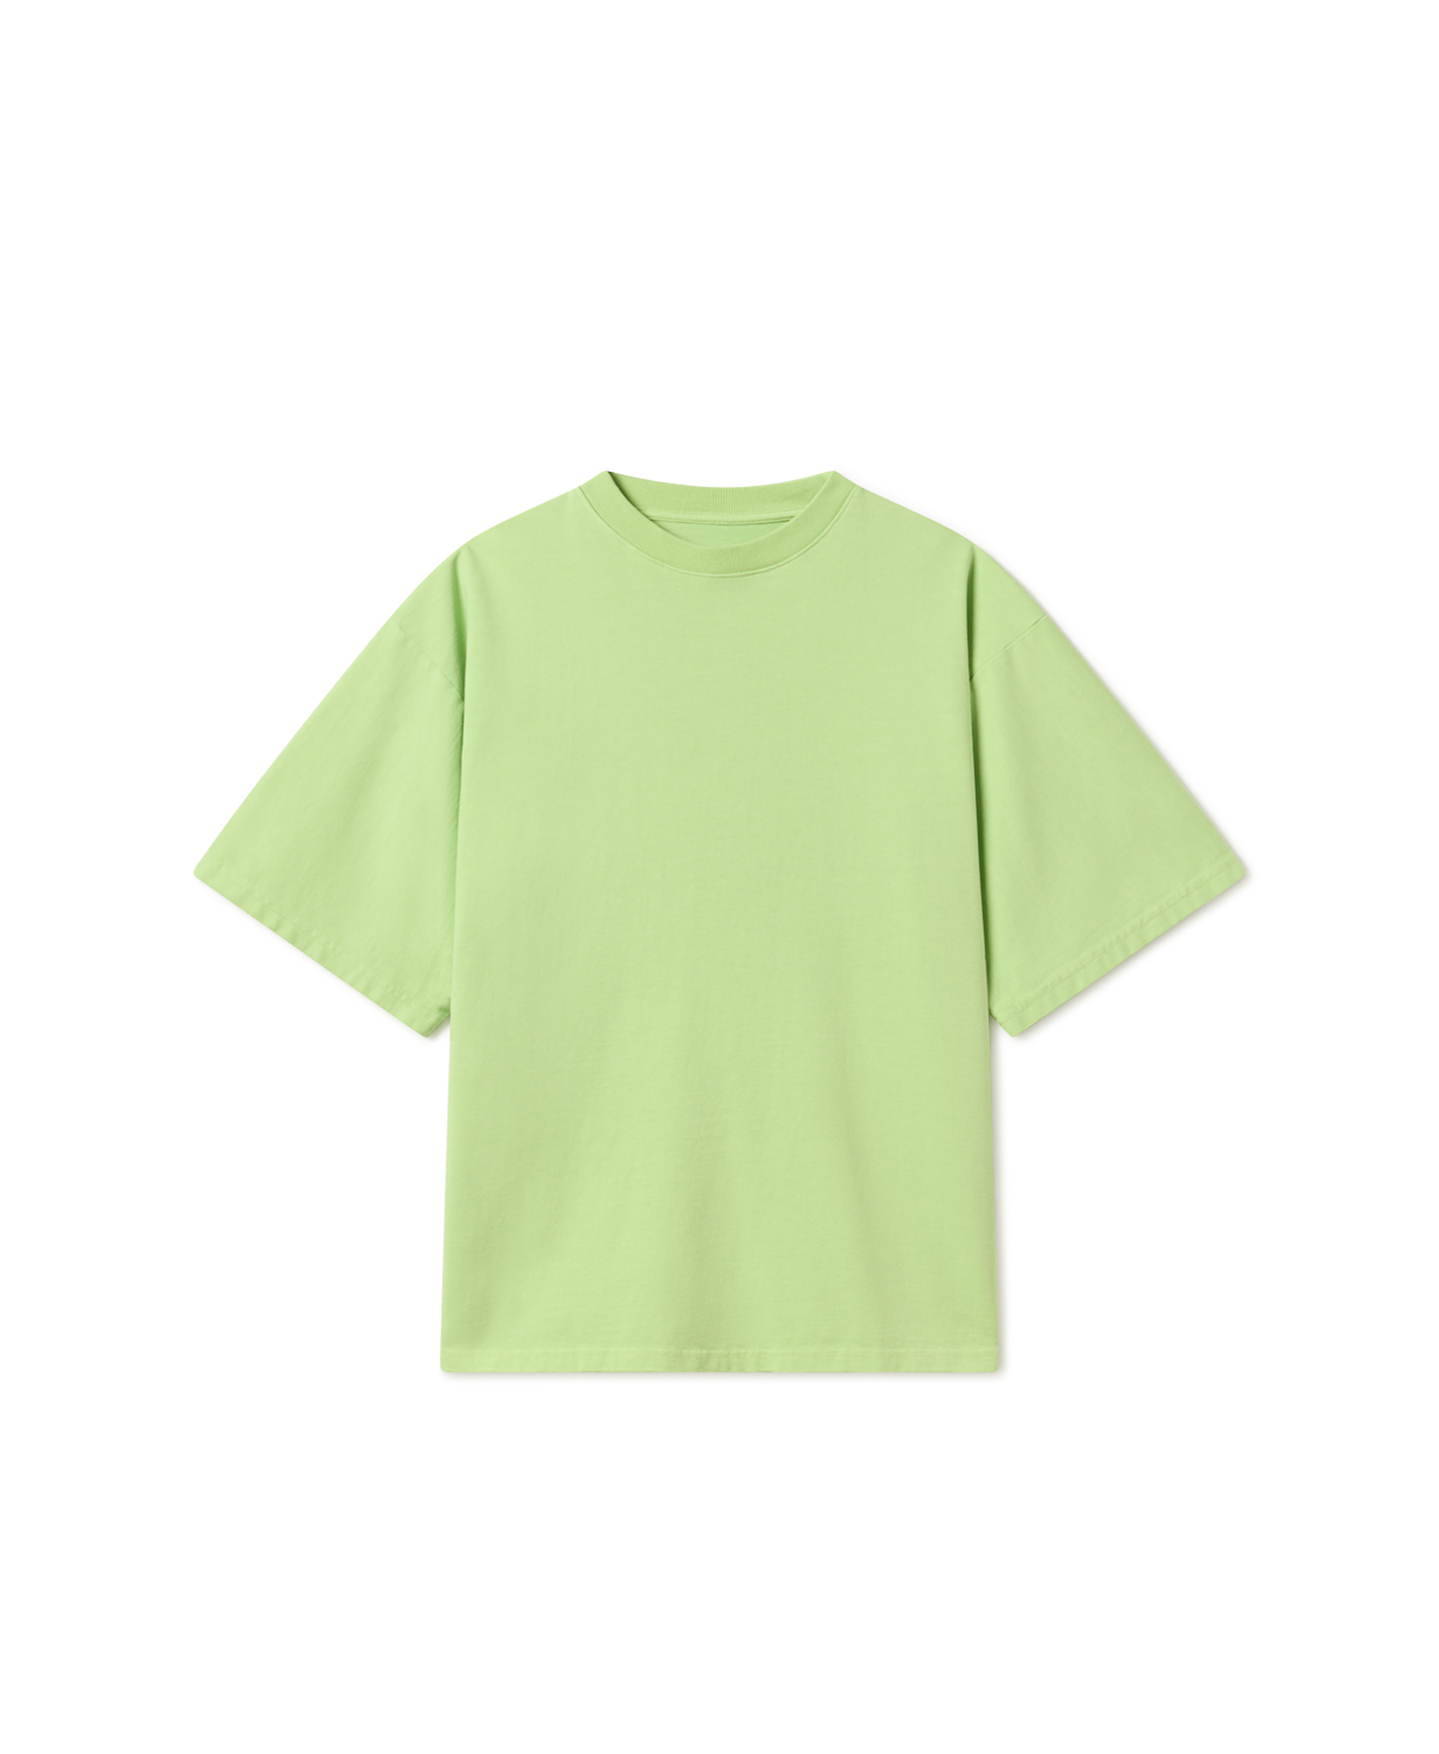 300 GSM 'Moss Green' T-Shirt